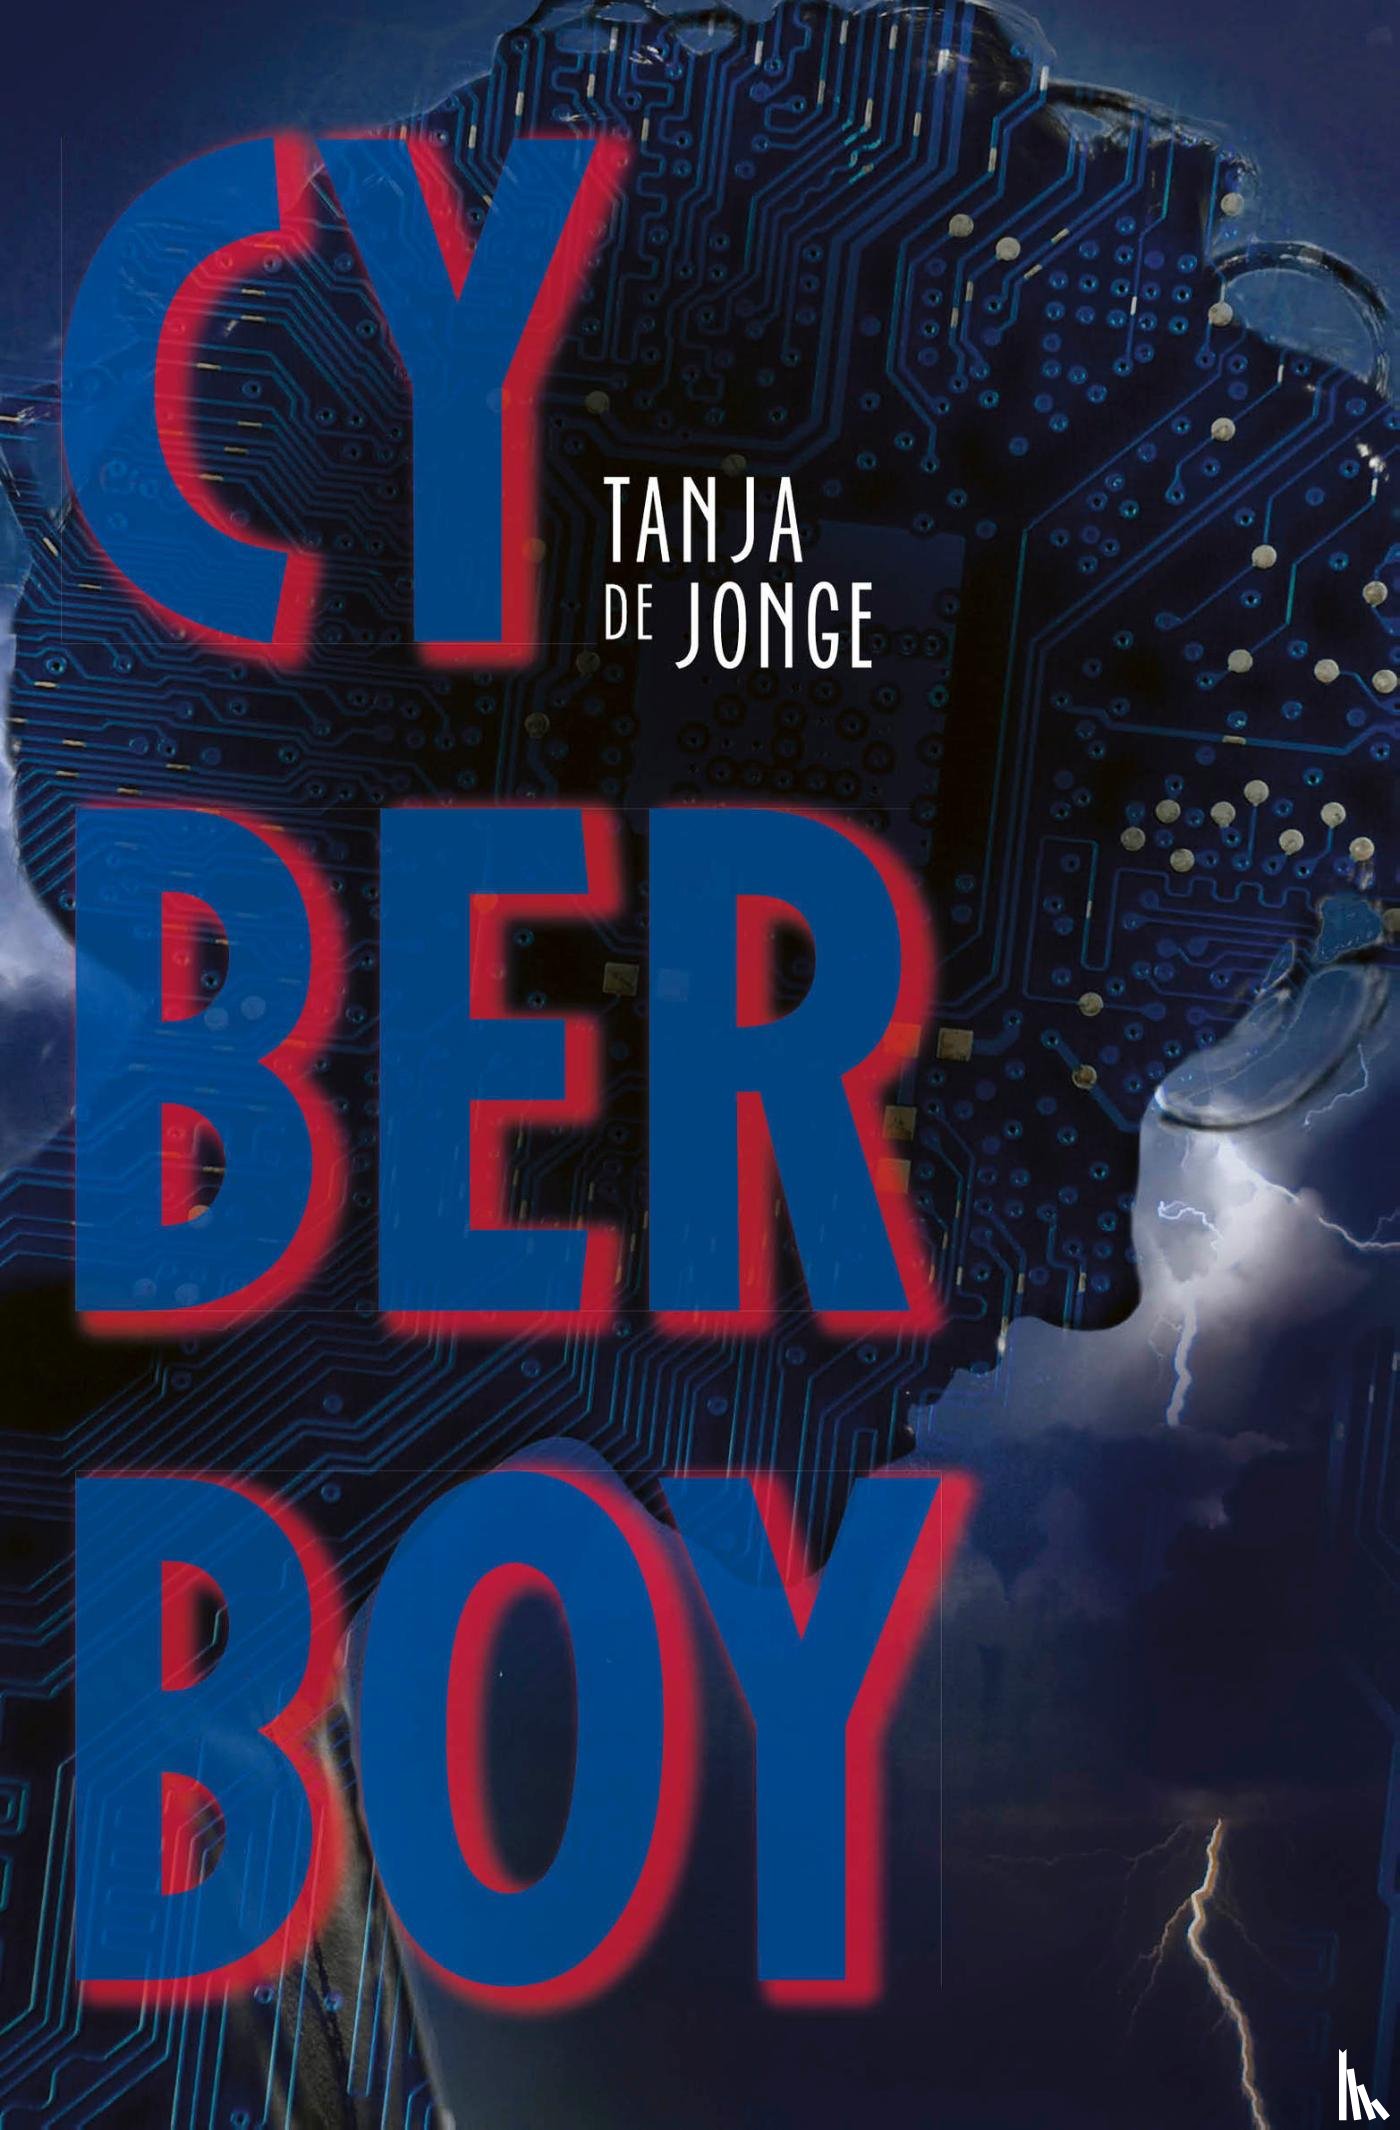 Jonge, Tanja de - Cyberboy